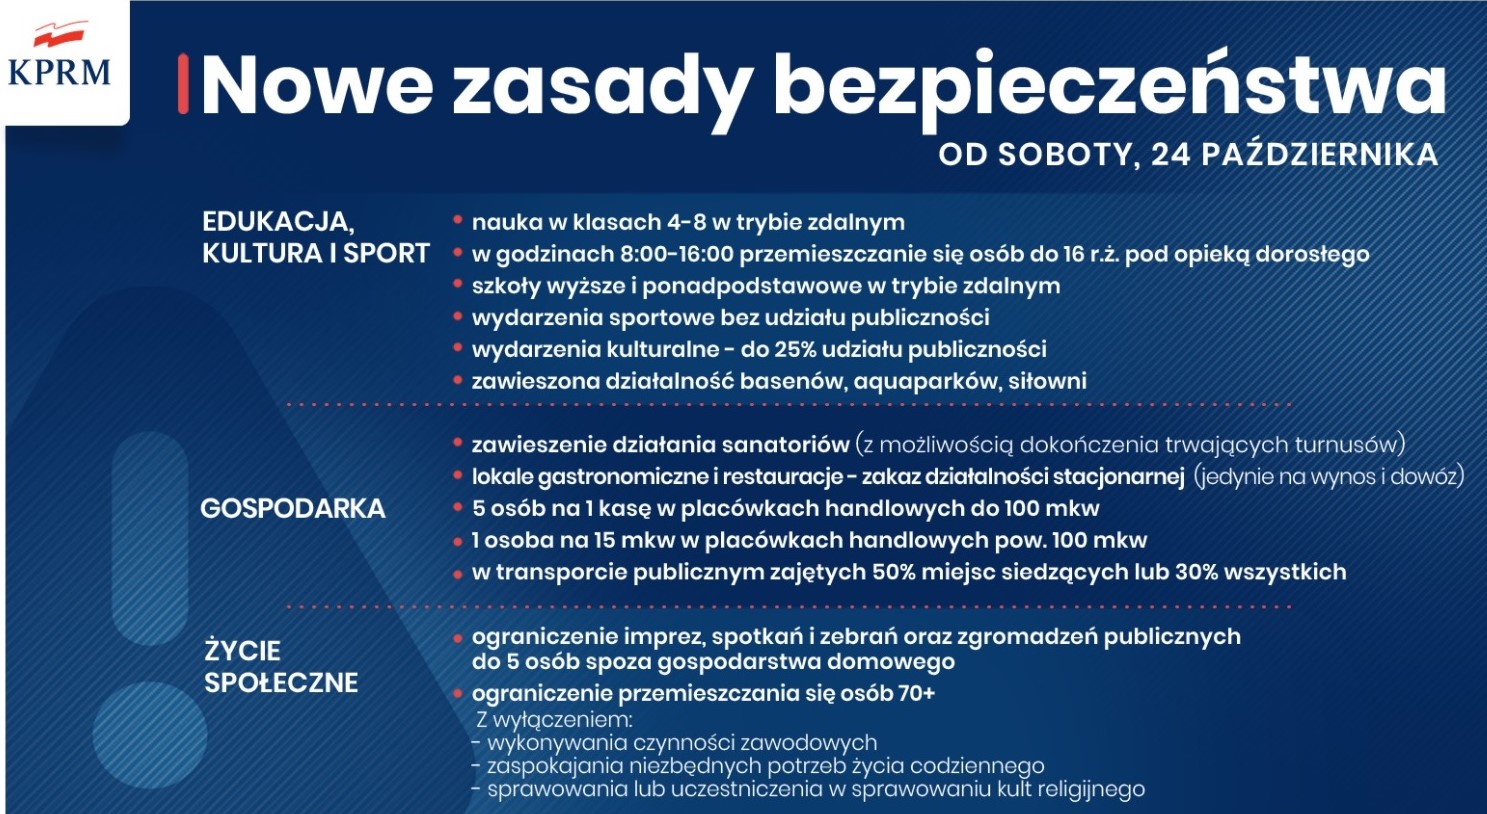 Nowe zasady bezpieczeństwa obowiązujące w Polsce od soboty 24 października